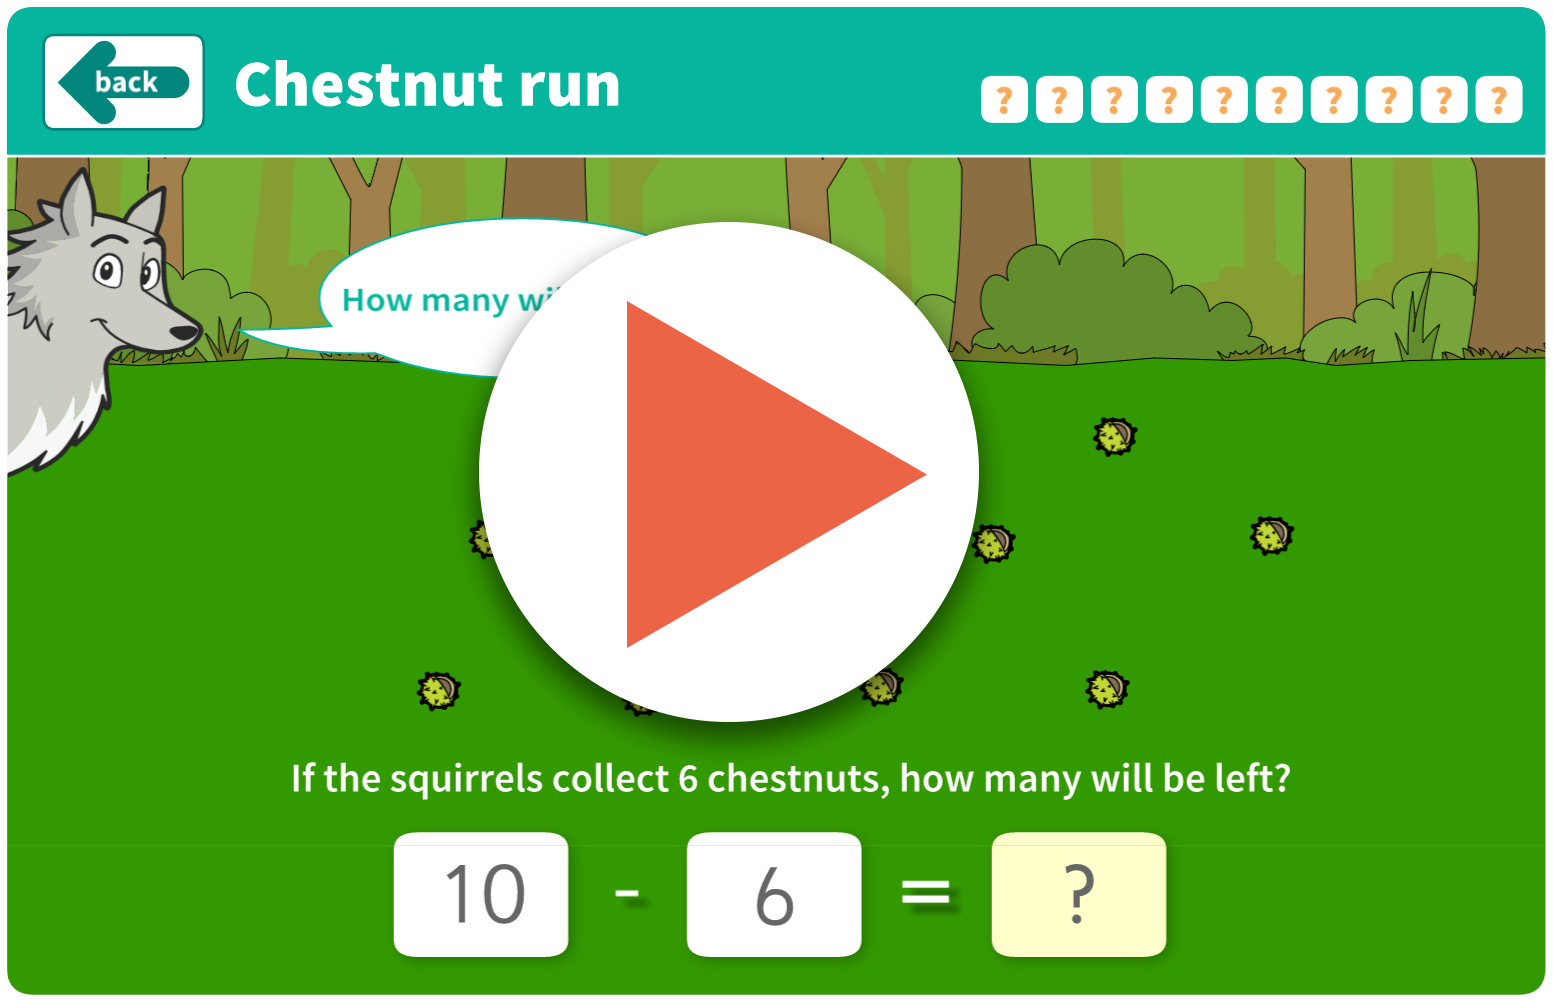 Chestnut run game (interactive)